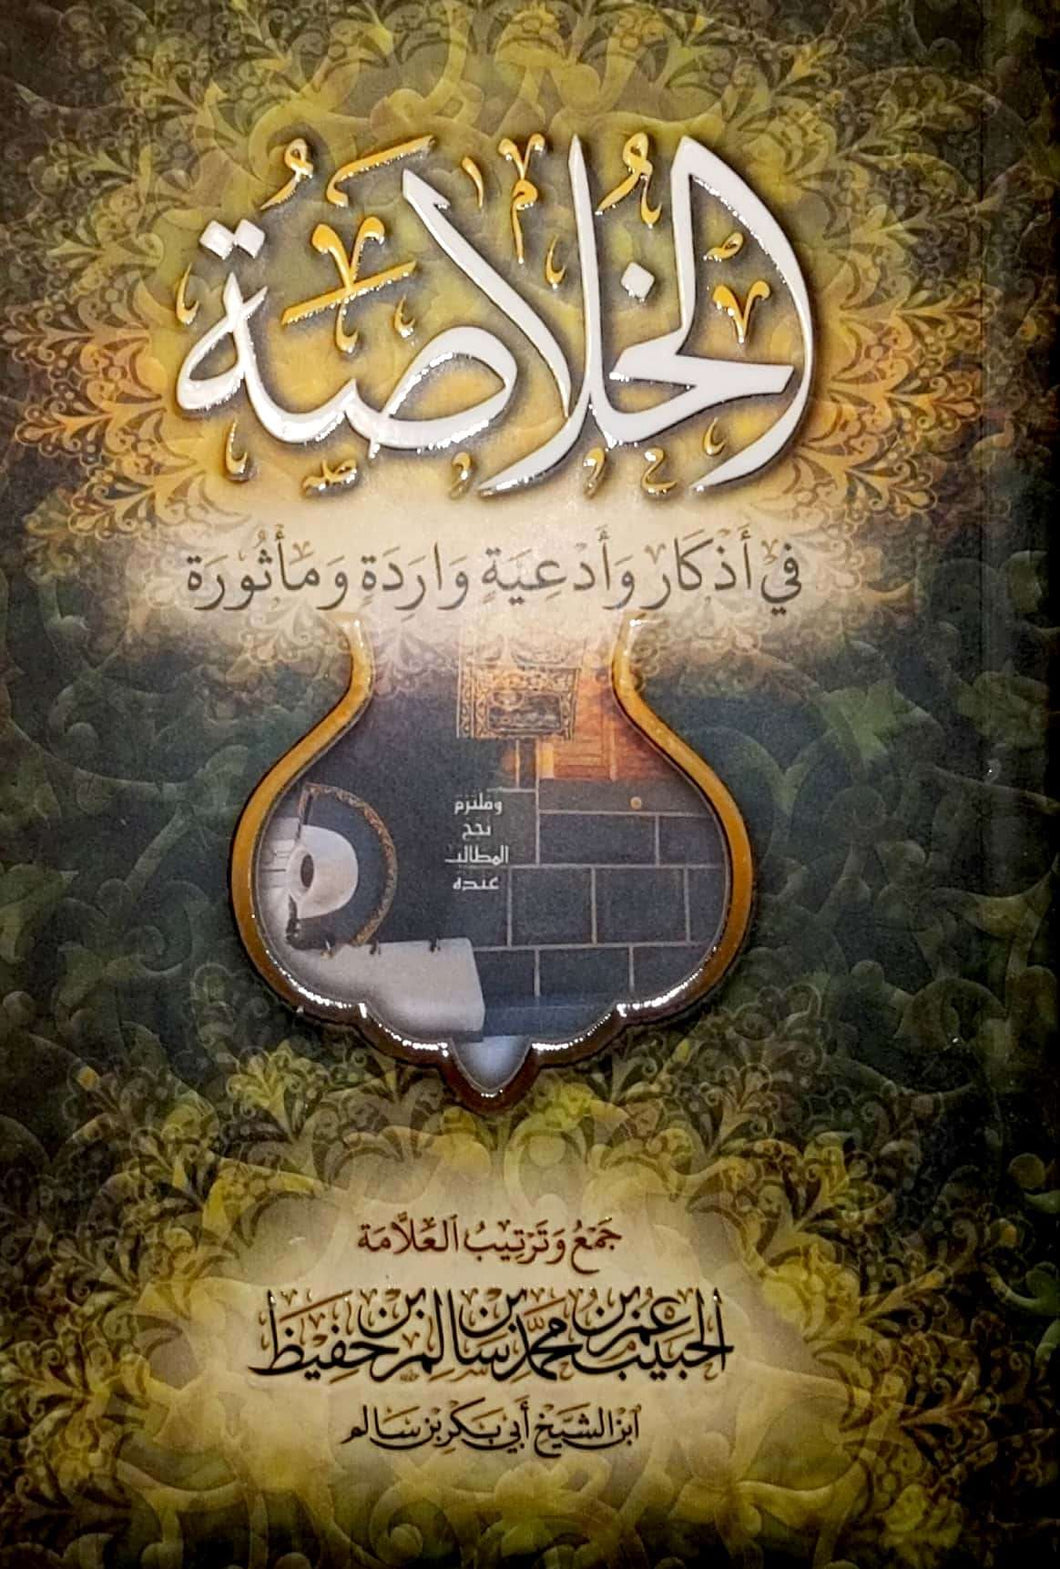 The Khulasa (Arabic)